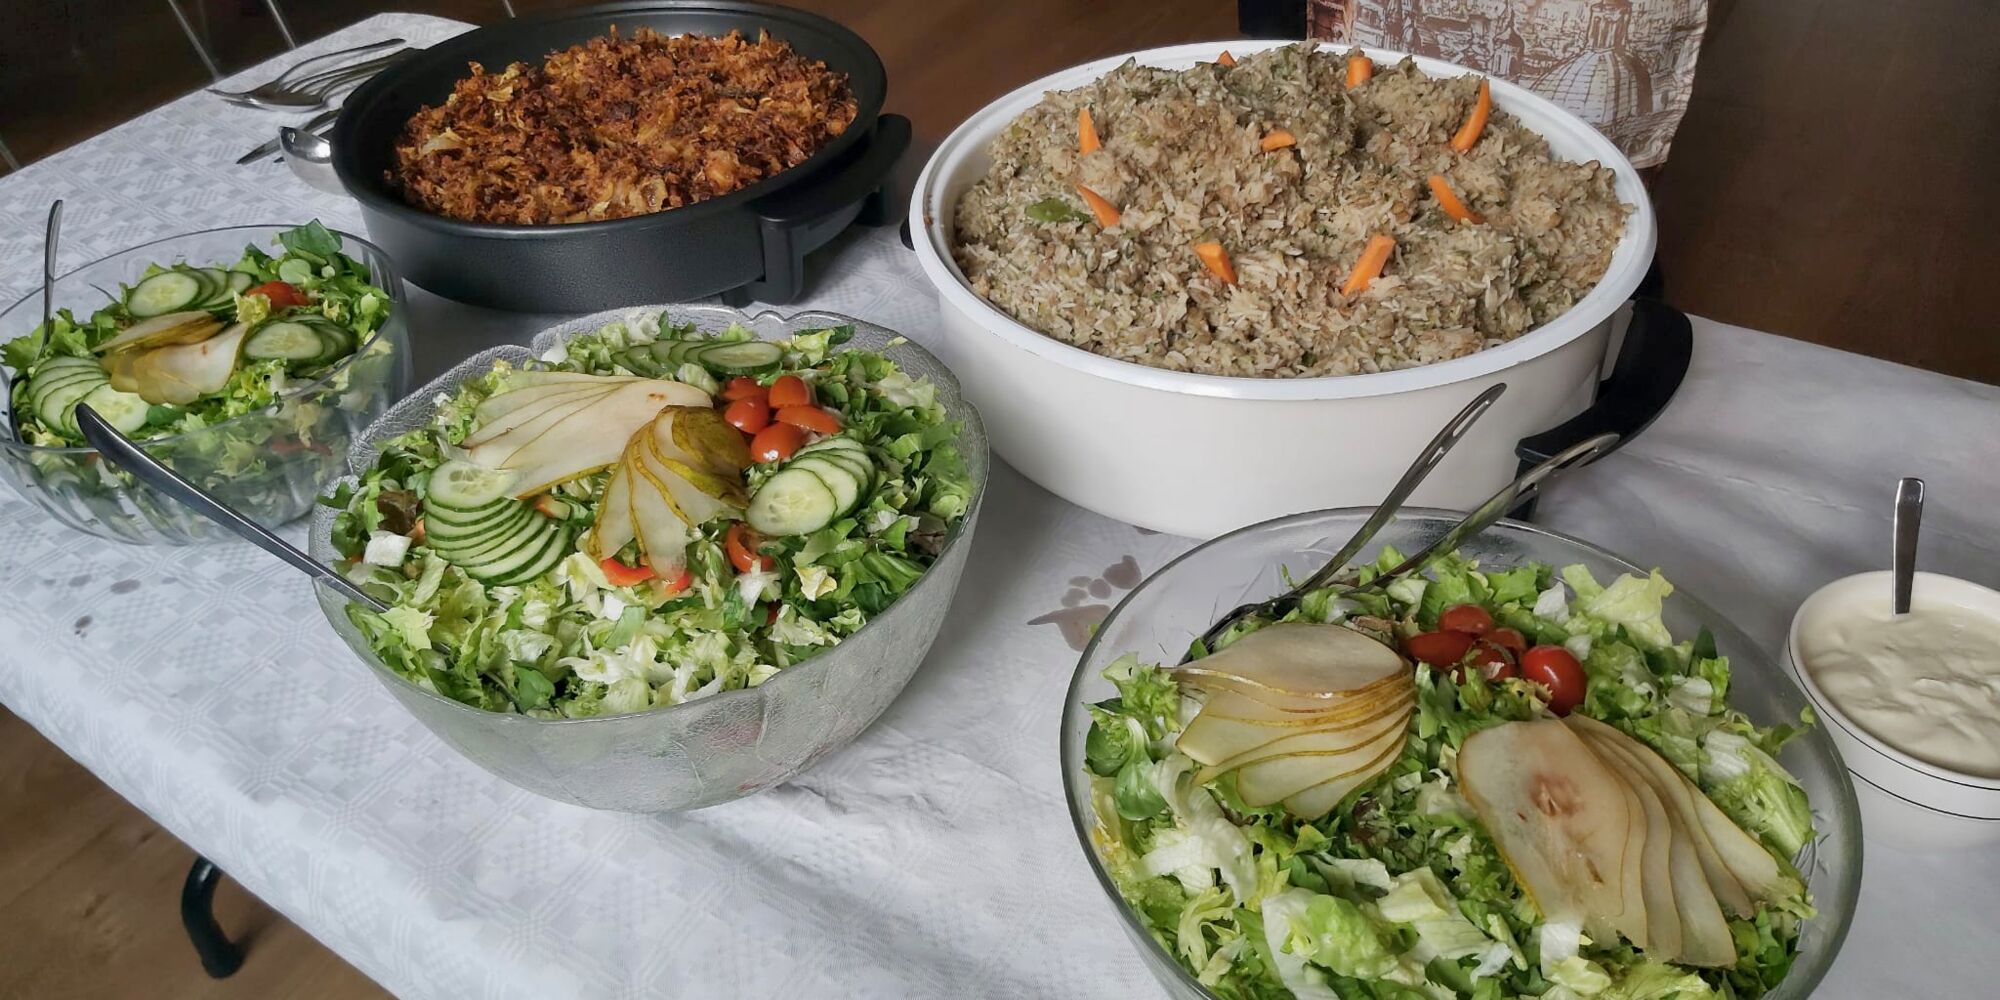 Hier sieht man mehrere Speisen in Schüsseln und Warmhaltepfannen, unter anderem vorne drei Salate.